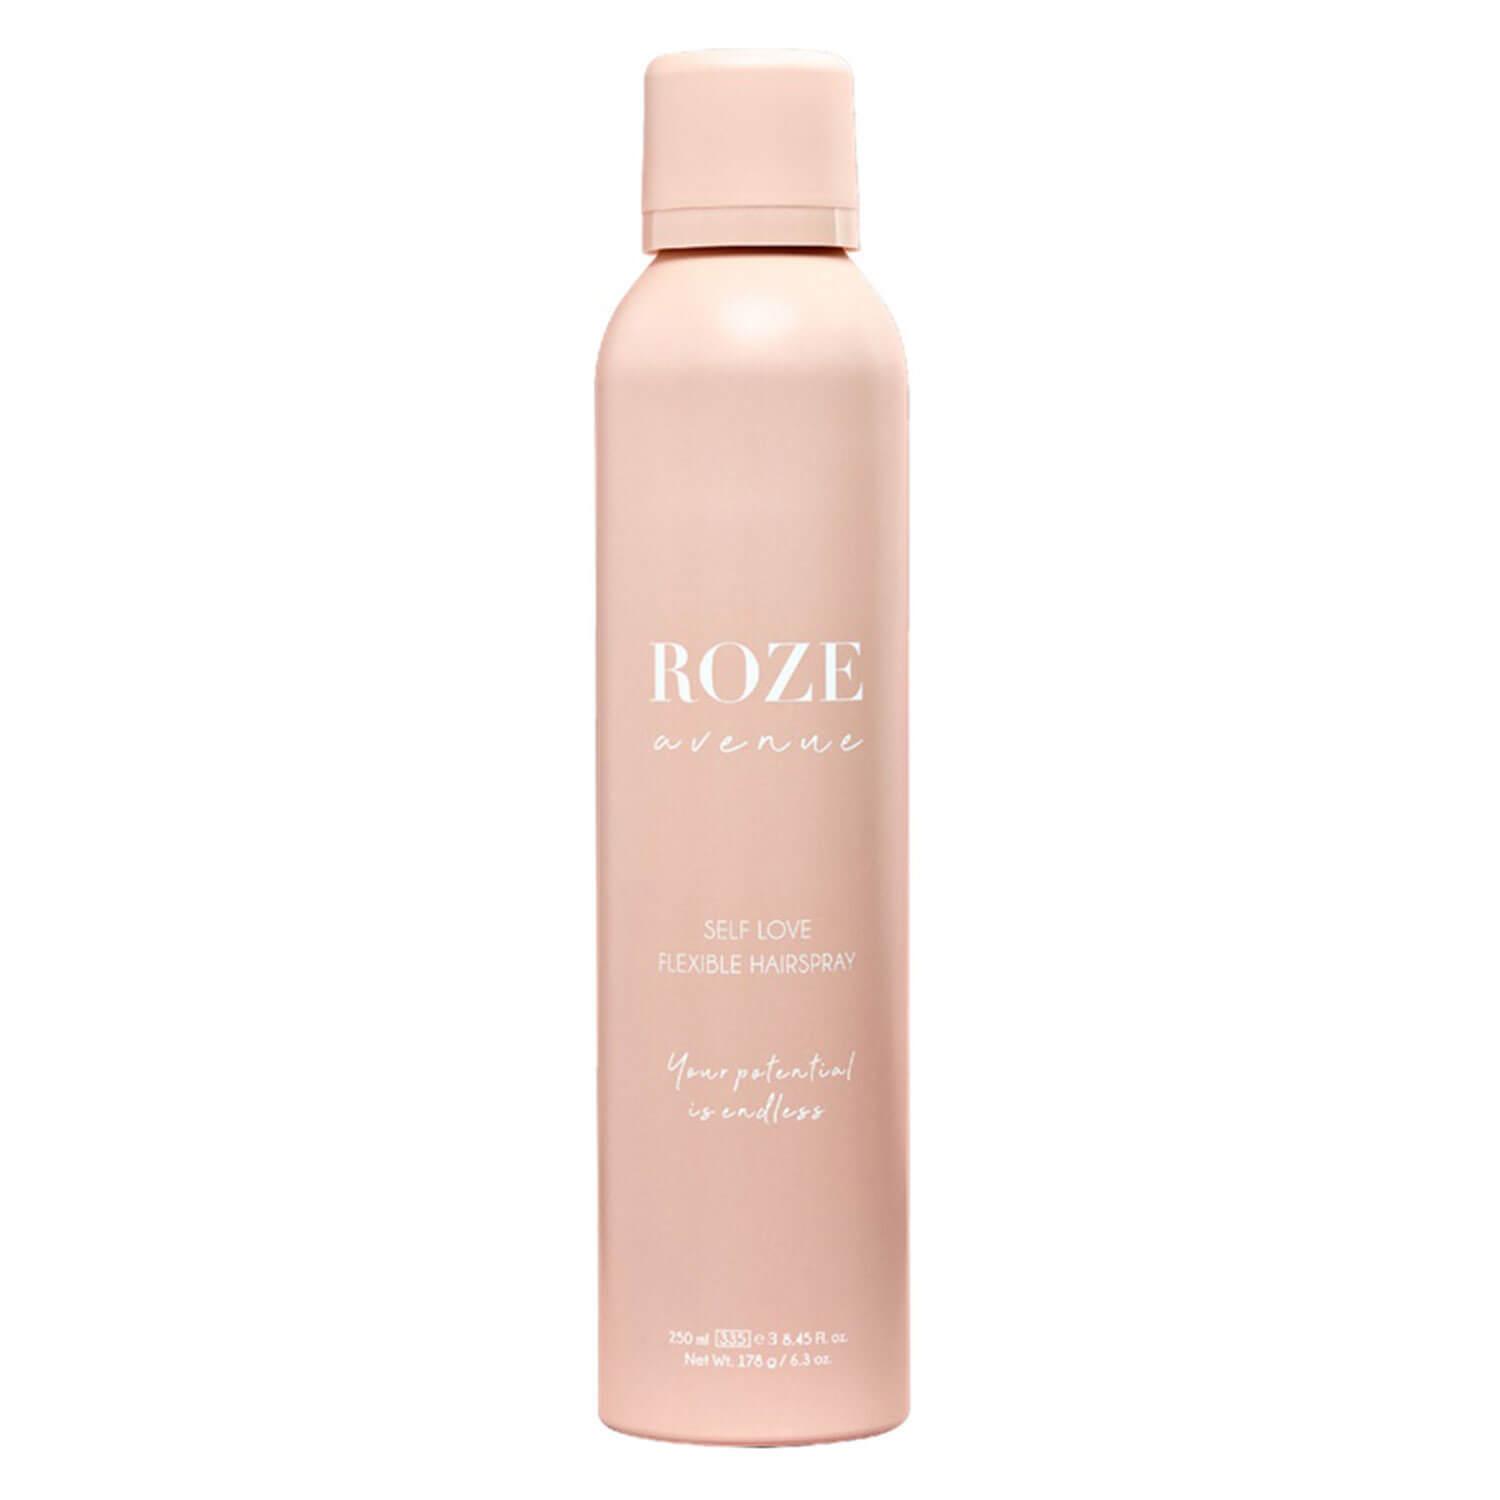 ROZE avenue - Self Love Flexible Hairspray